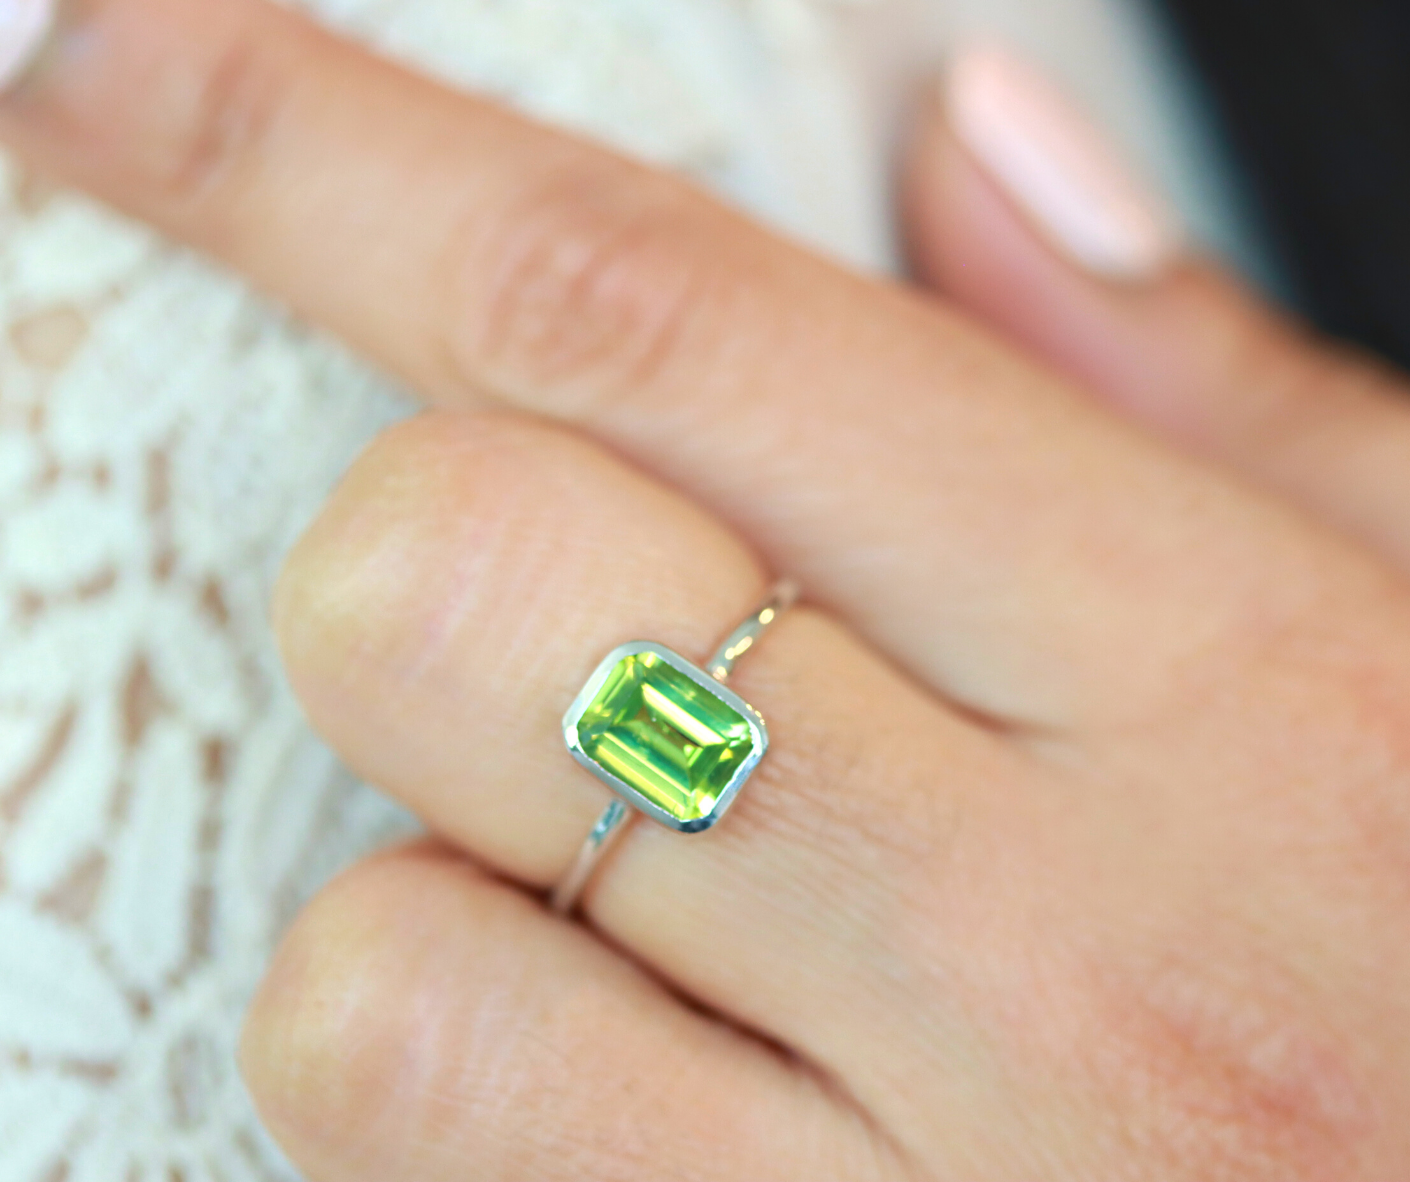 Emerald cut peridot ring